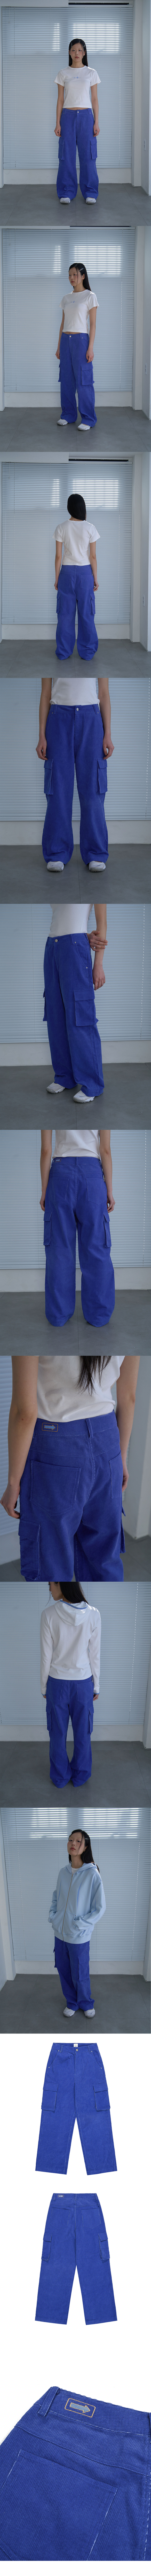 ARROW PIGMENT CORDUROY PANTS (BLUE)